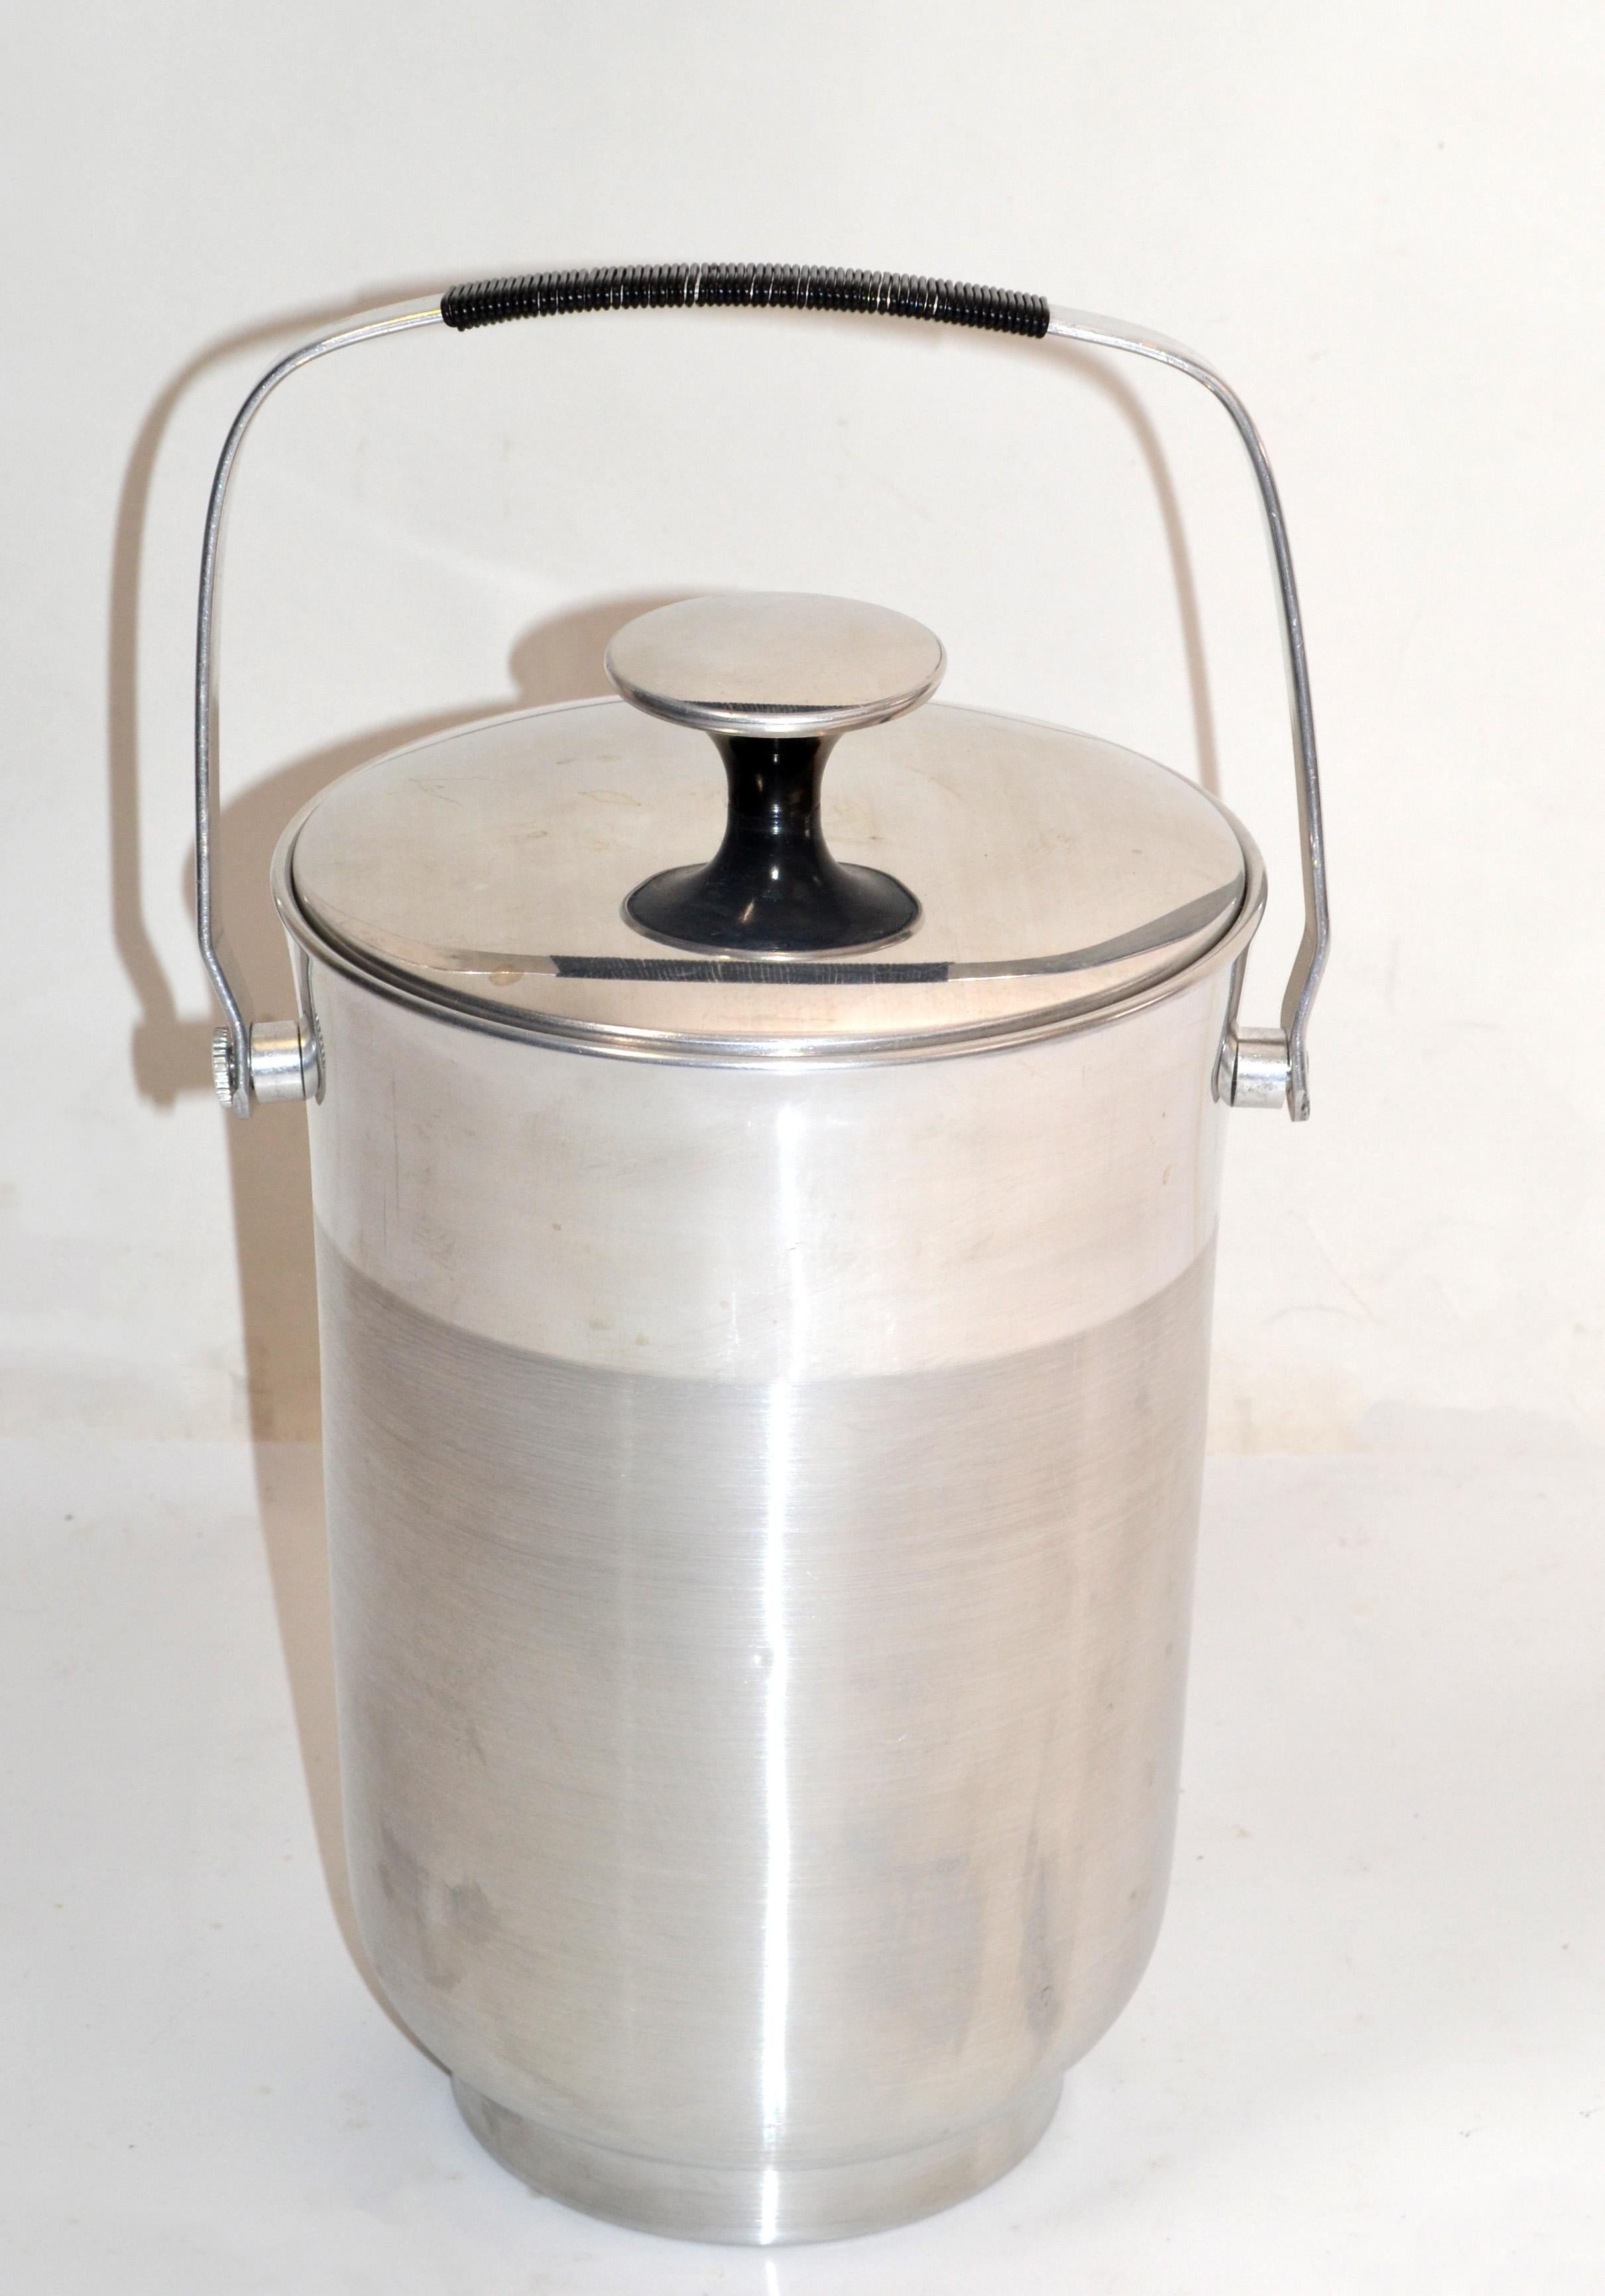 Italian Steel Black Bakelite Lidded Wine Cooler Objets D'arts Ice Bucket Vessel For Sale 3